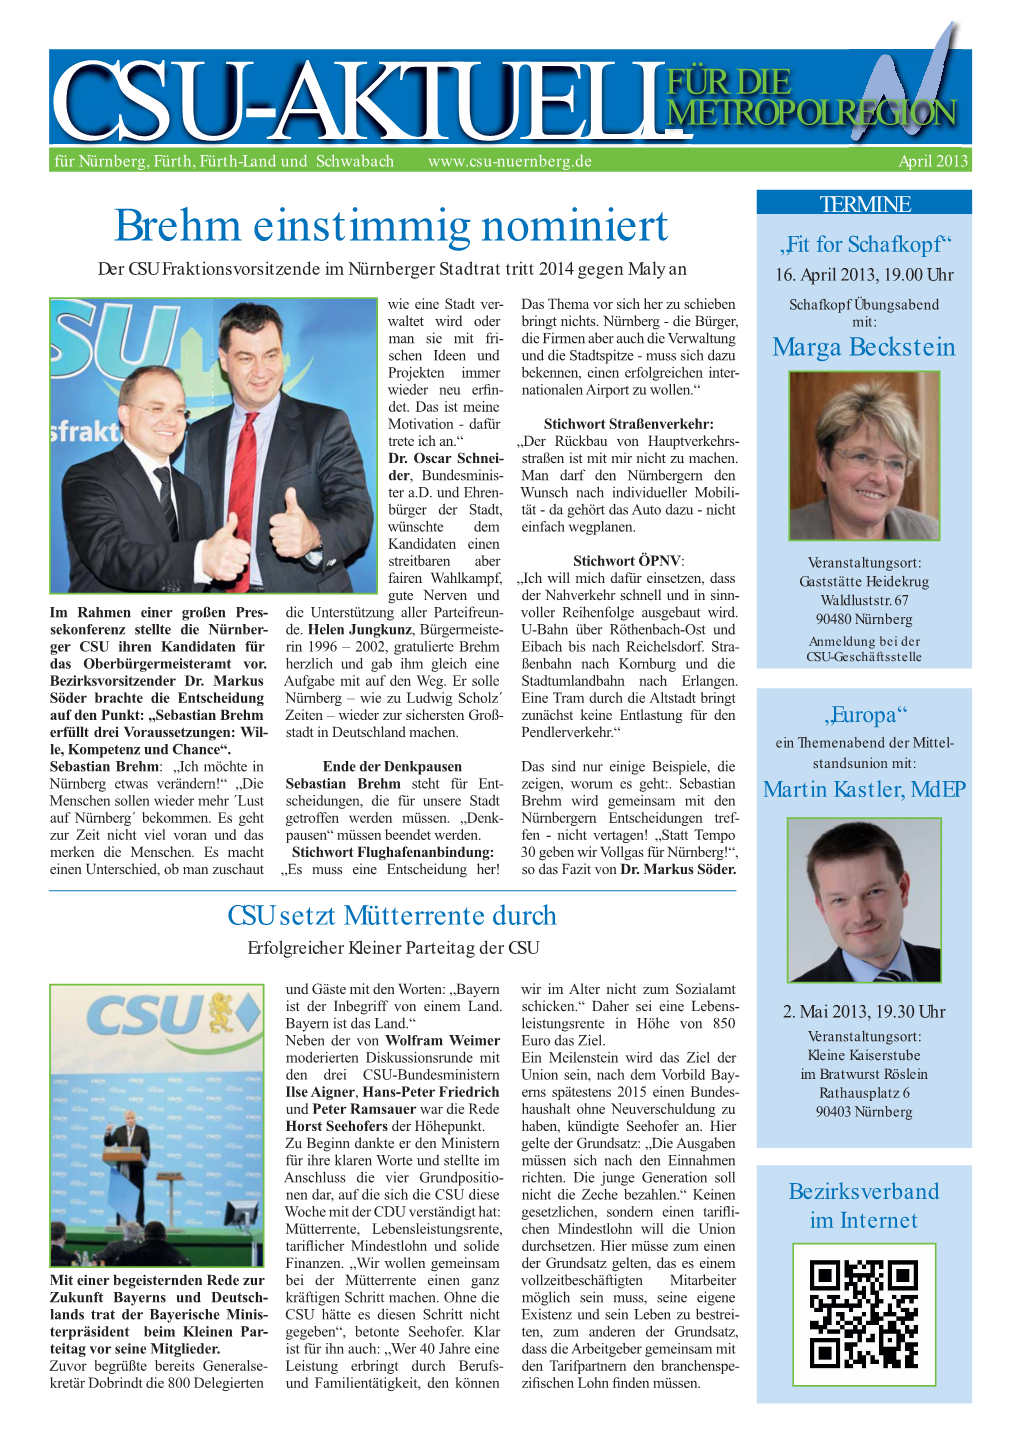 Brehm Einstimmig Nominiert „Fit for Schafkopf“ Der CSU Fraktionsvorsitzende Im Nürnberger Stadtrat Tritt 2014 Gegen Maly an 16